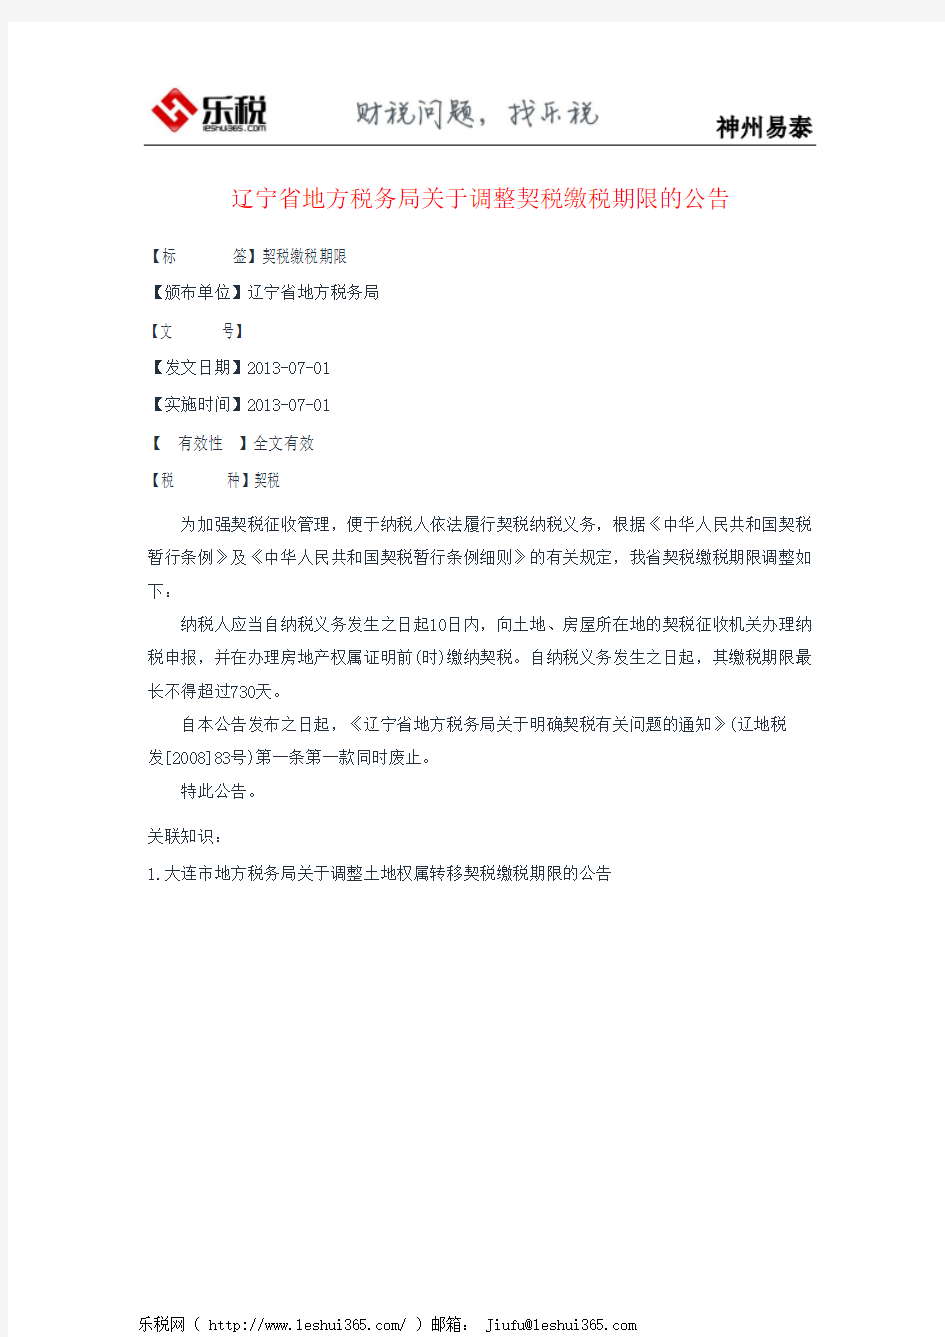 辽宁省地方税务局关于调整契税缴税期限的公告